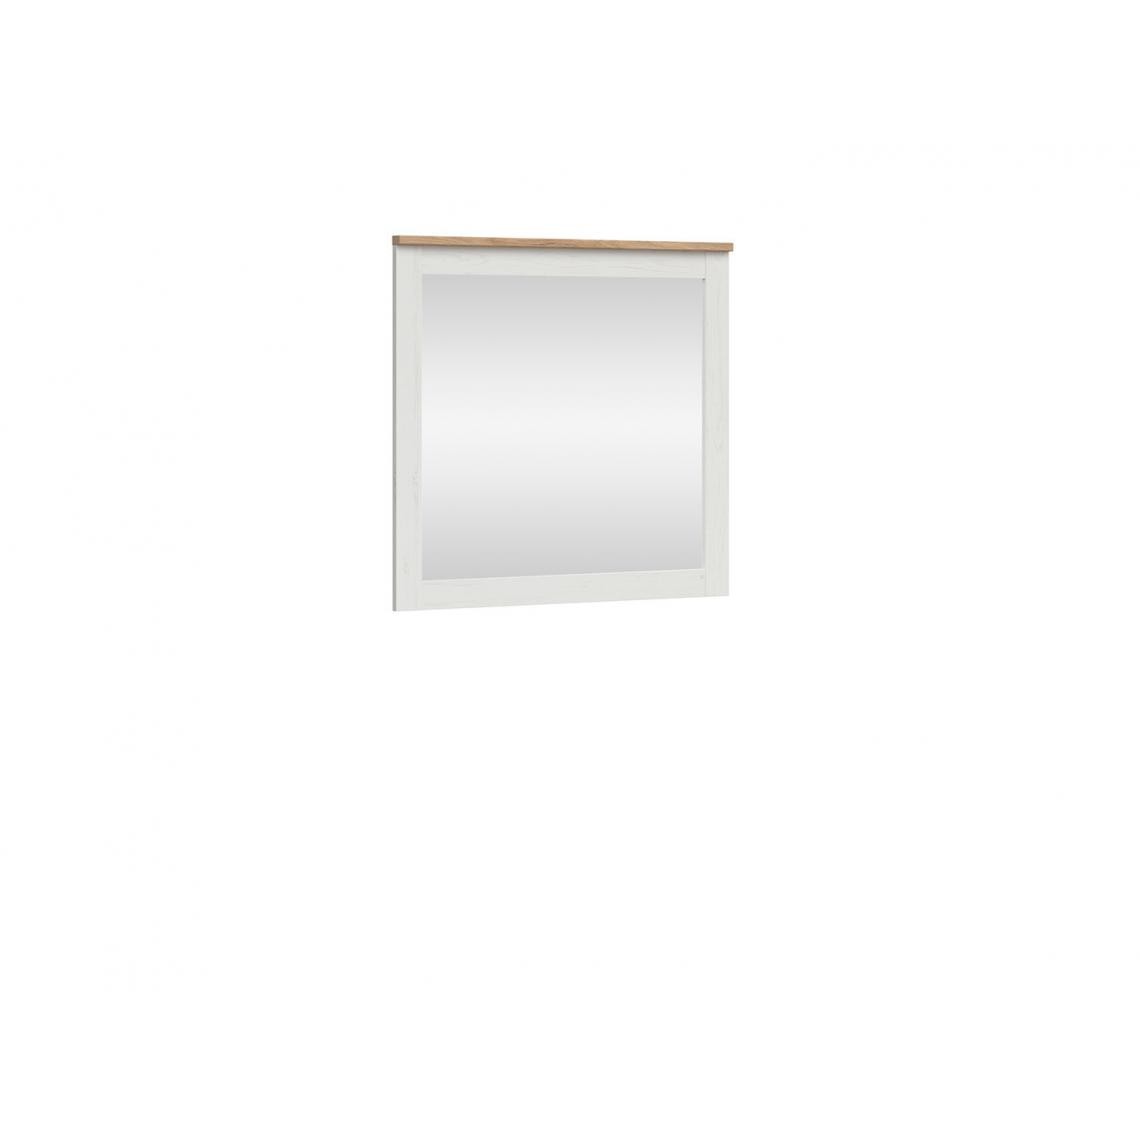 Hucoco - LOKSU - Miroir mural style scandinave salon/chambre/entrée - 96x90.5x4 - Décoration du couloir - Blanc - Miroirs